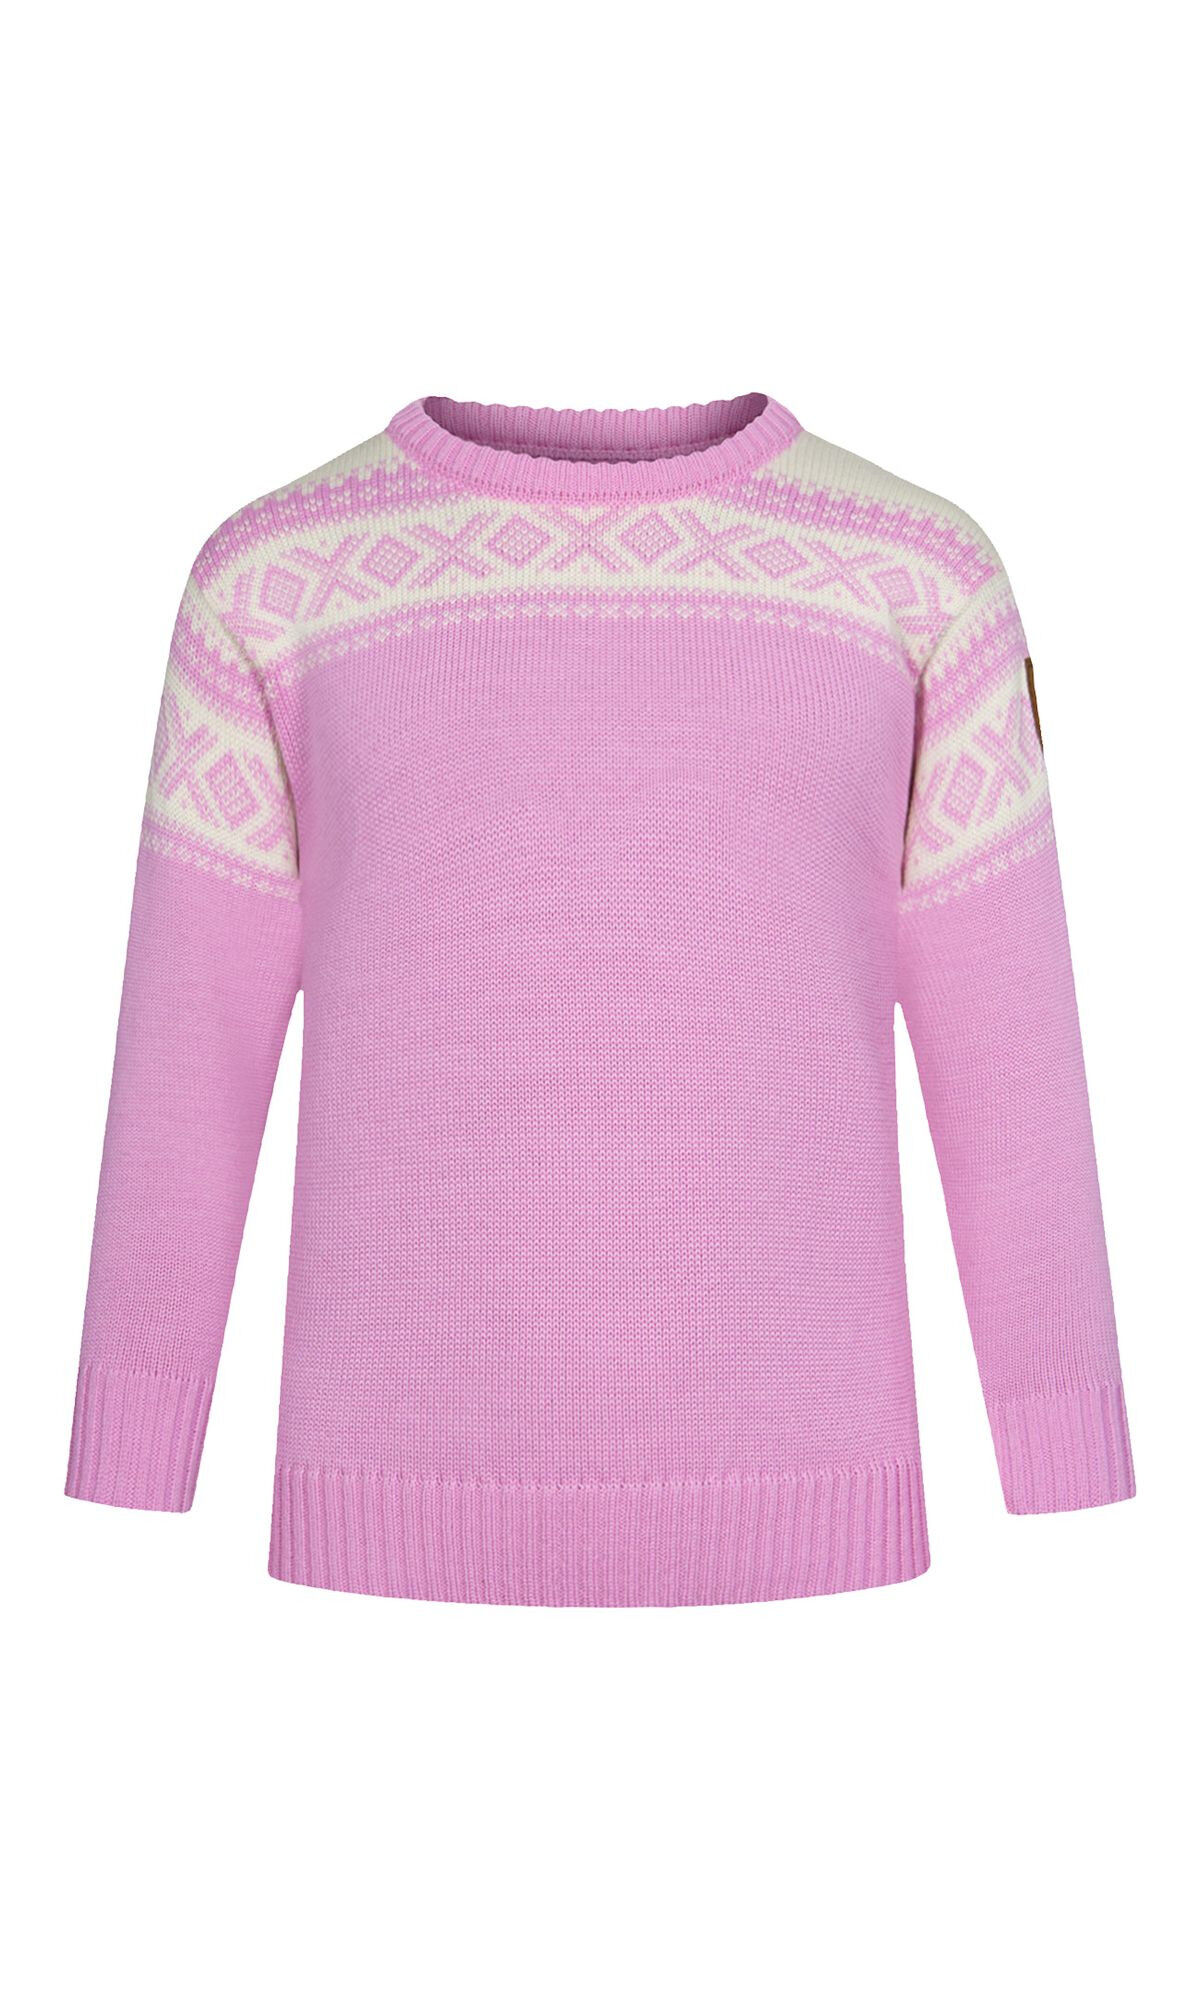 Dale of Norway Cortina Kids Sweater - Jerséis de lana merina - Niños | Hardloop